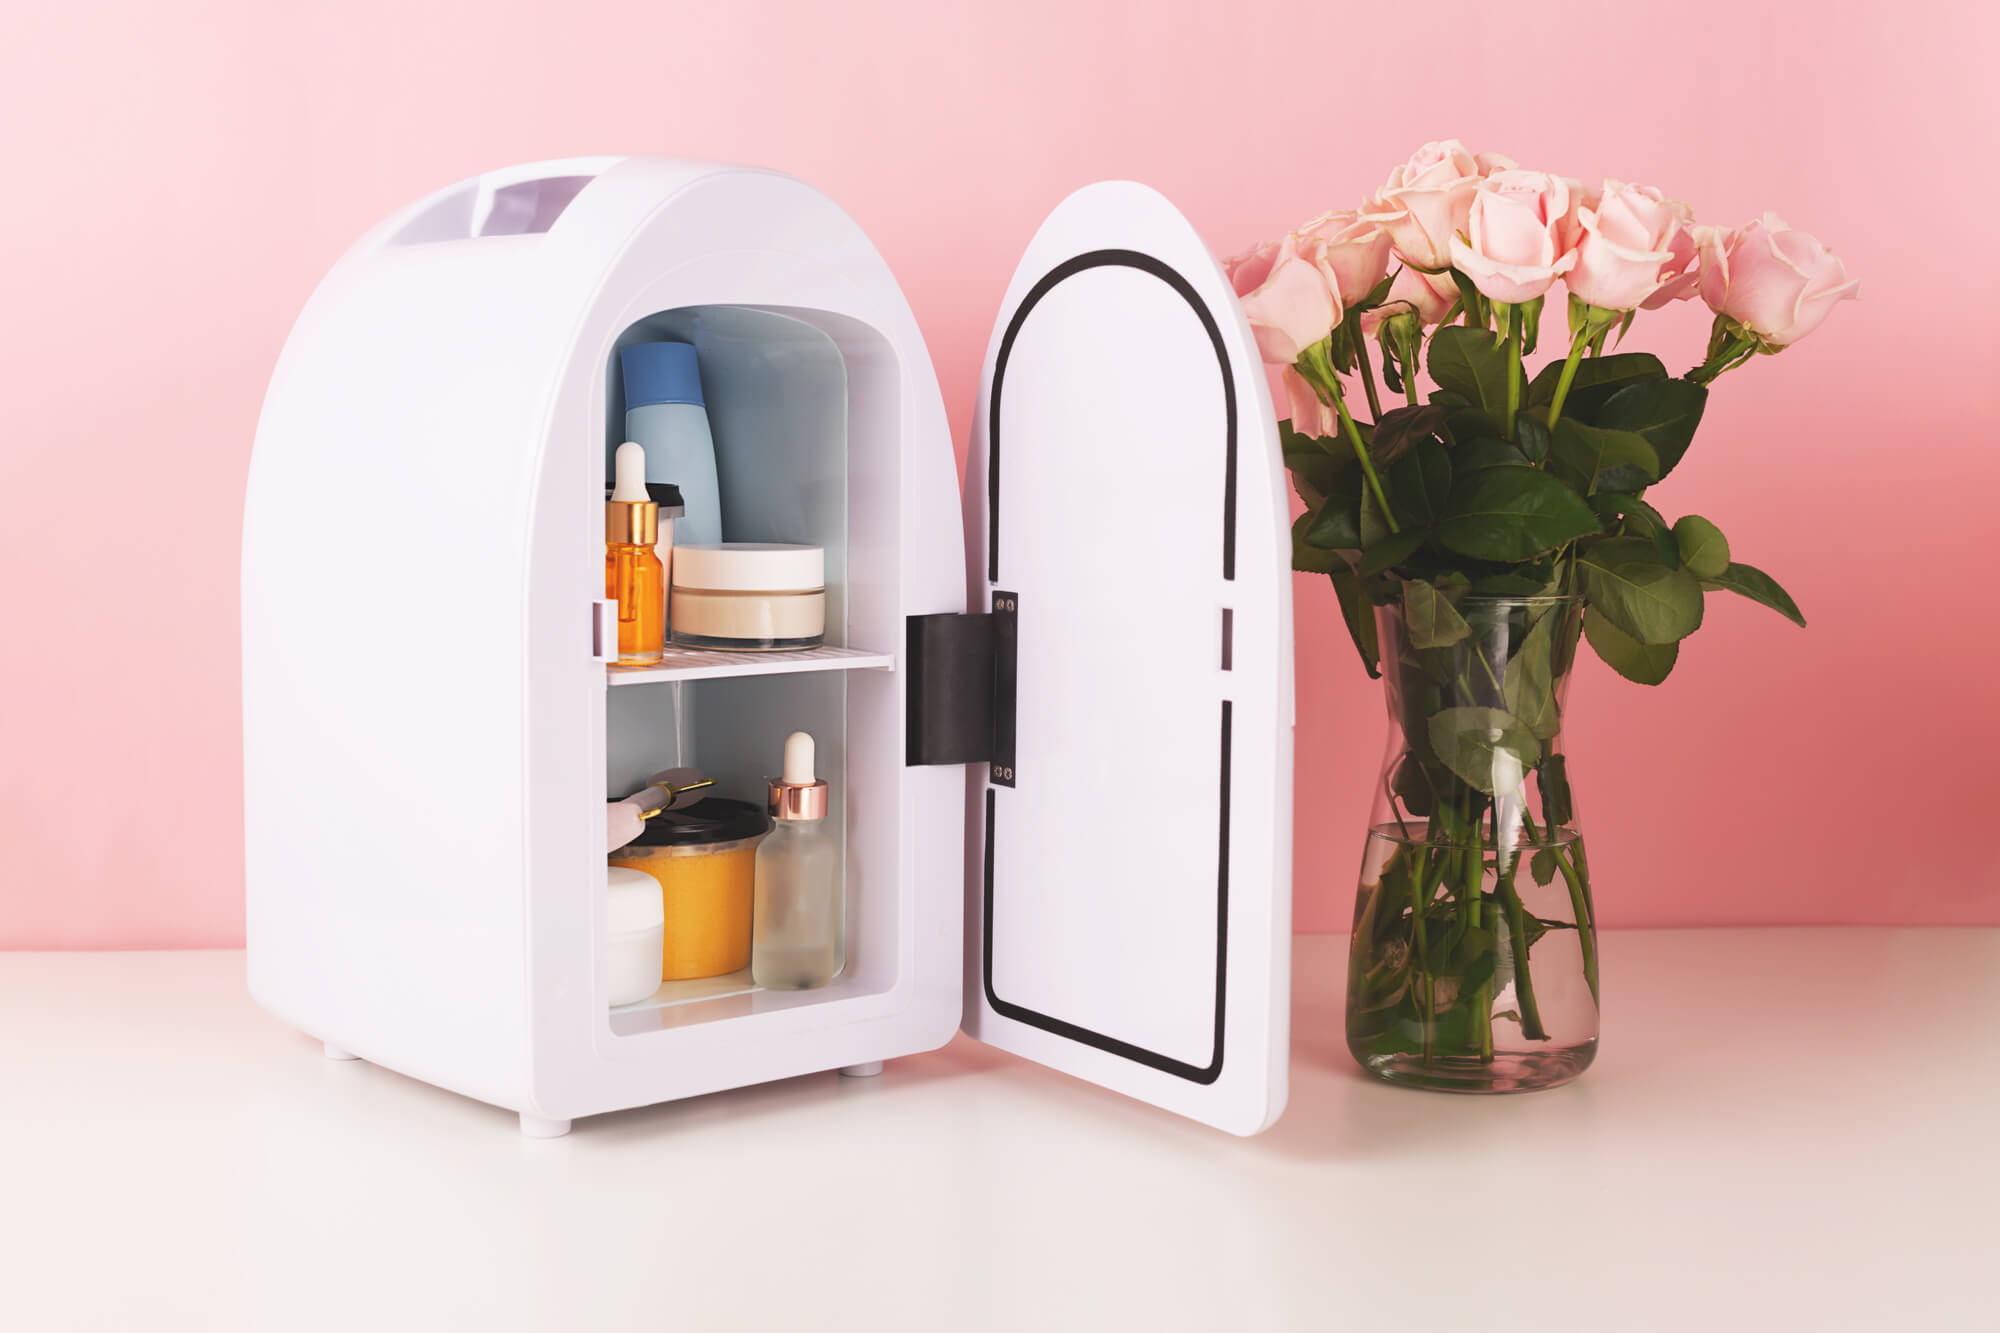 Valen La Pena Los Refrigeradores De Skincare? - 10 Consejos